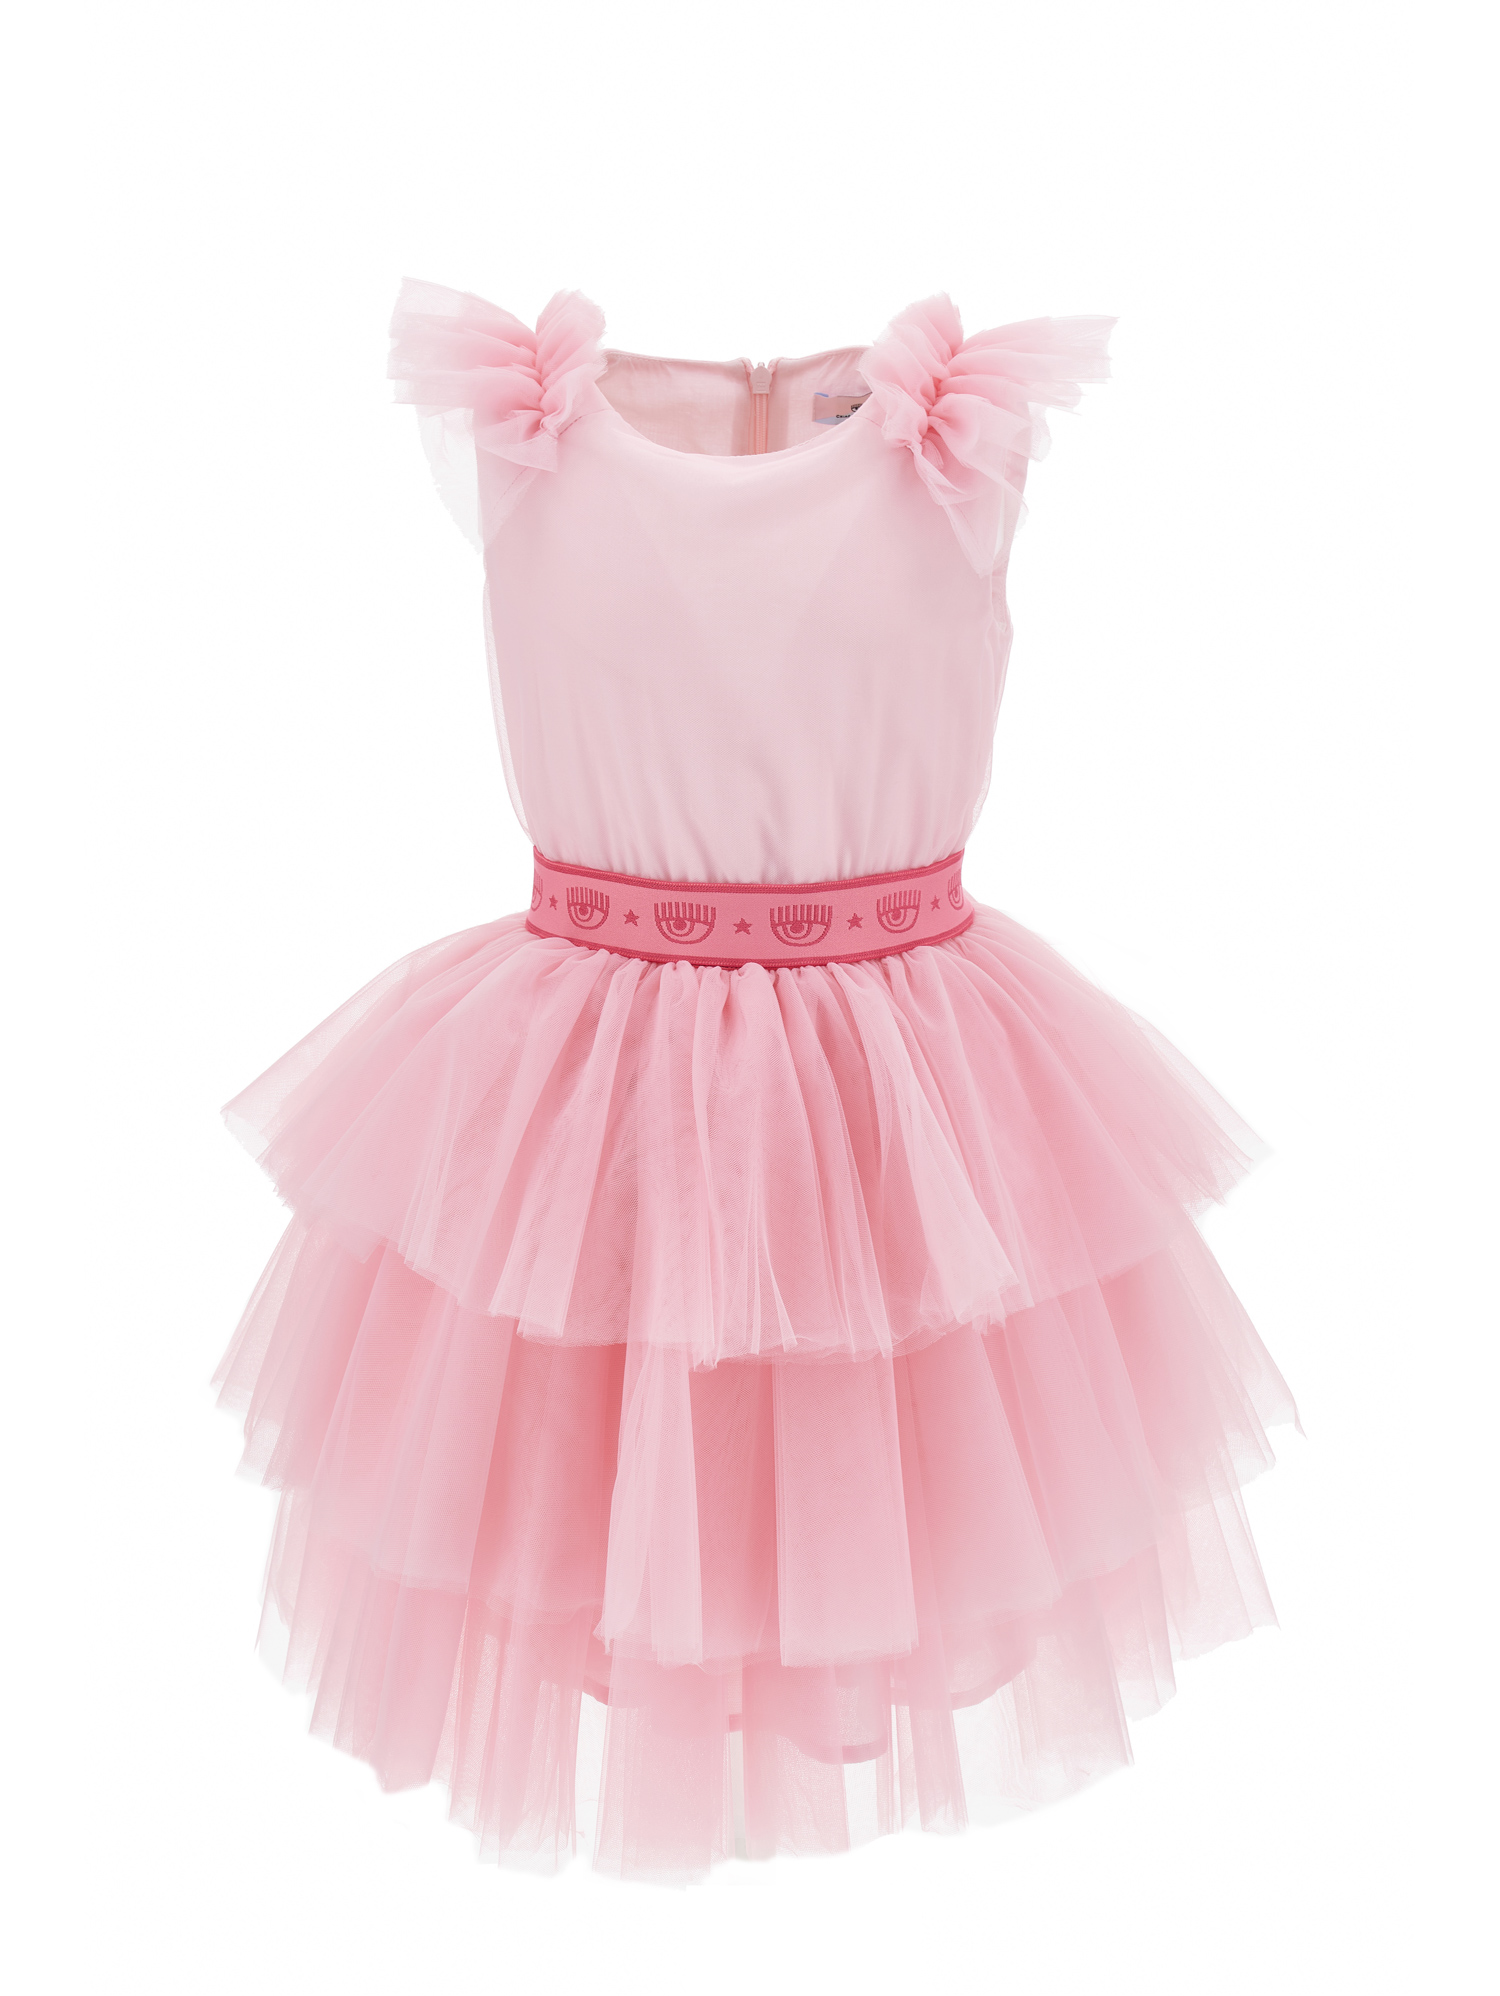 Chiara Ferragni Babies'   Cf Party Tulle Dress In Rosa Fairy Tale